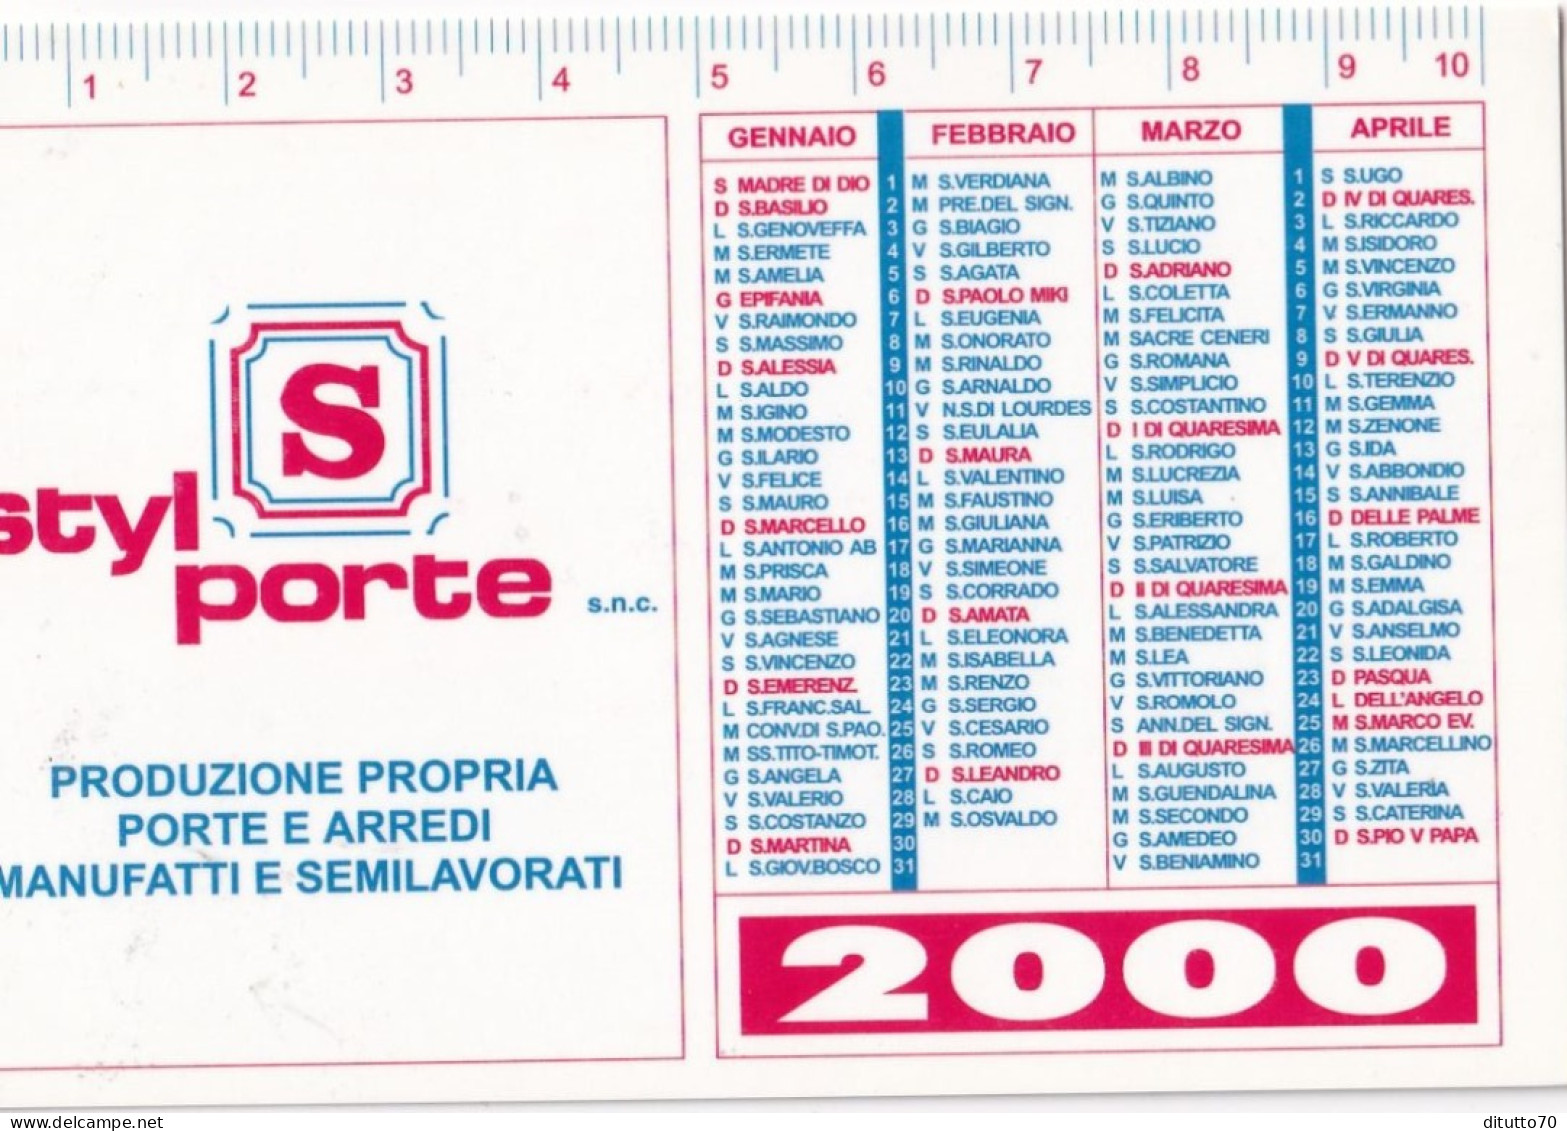 Calendarietto - Styl Porte - Rivalta - Torino - Anno 2000 - Kleinformat : 1991-00